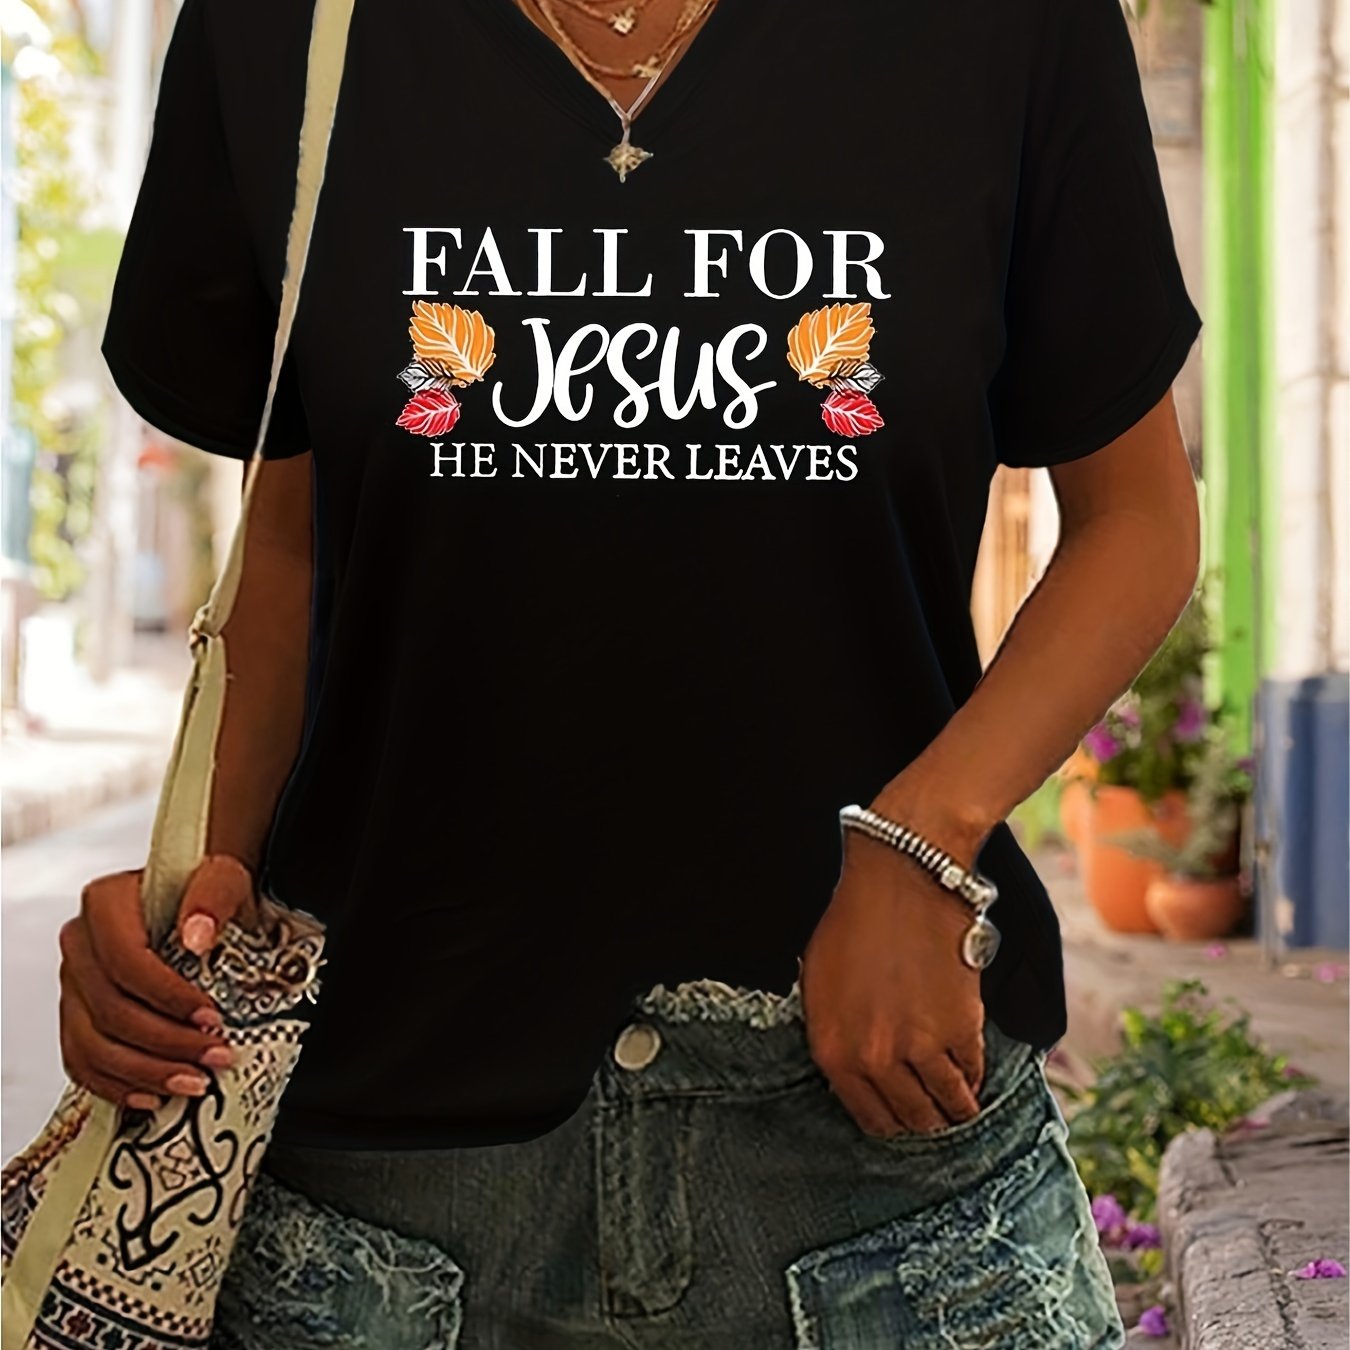 Fall For Jesus He Never Leaves Women's Christian V Neck T-Shirt claimedbygoddesigns